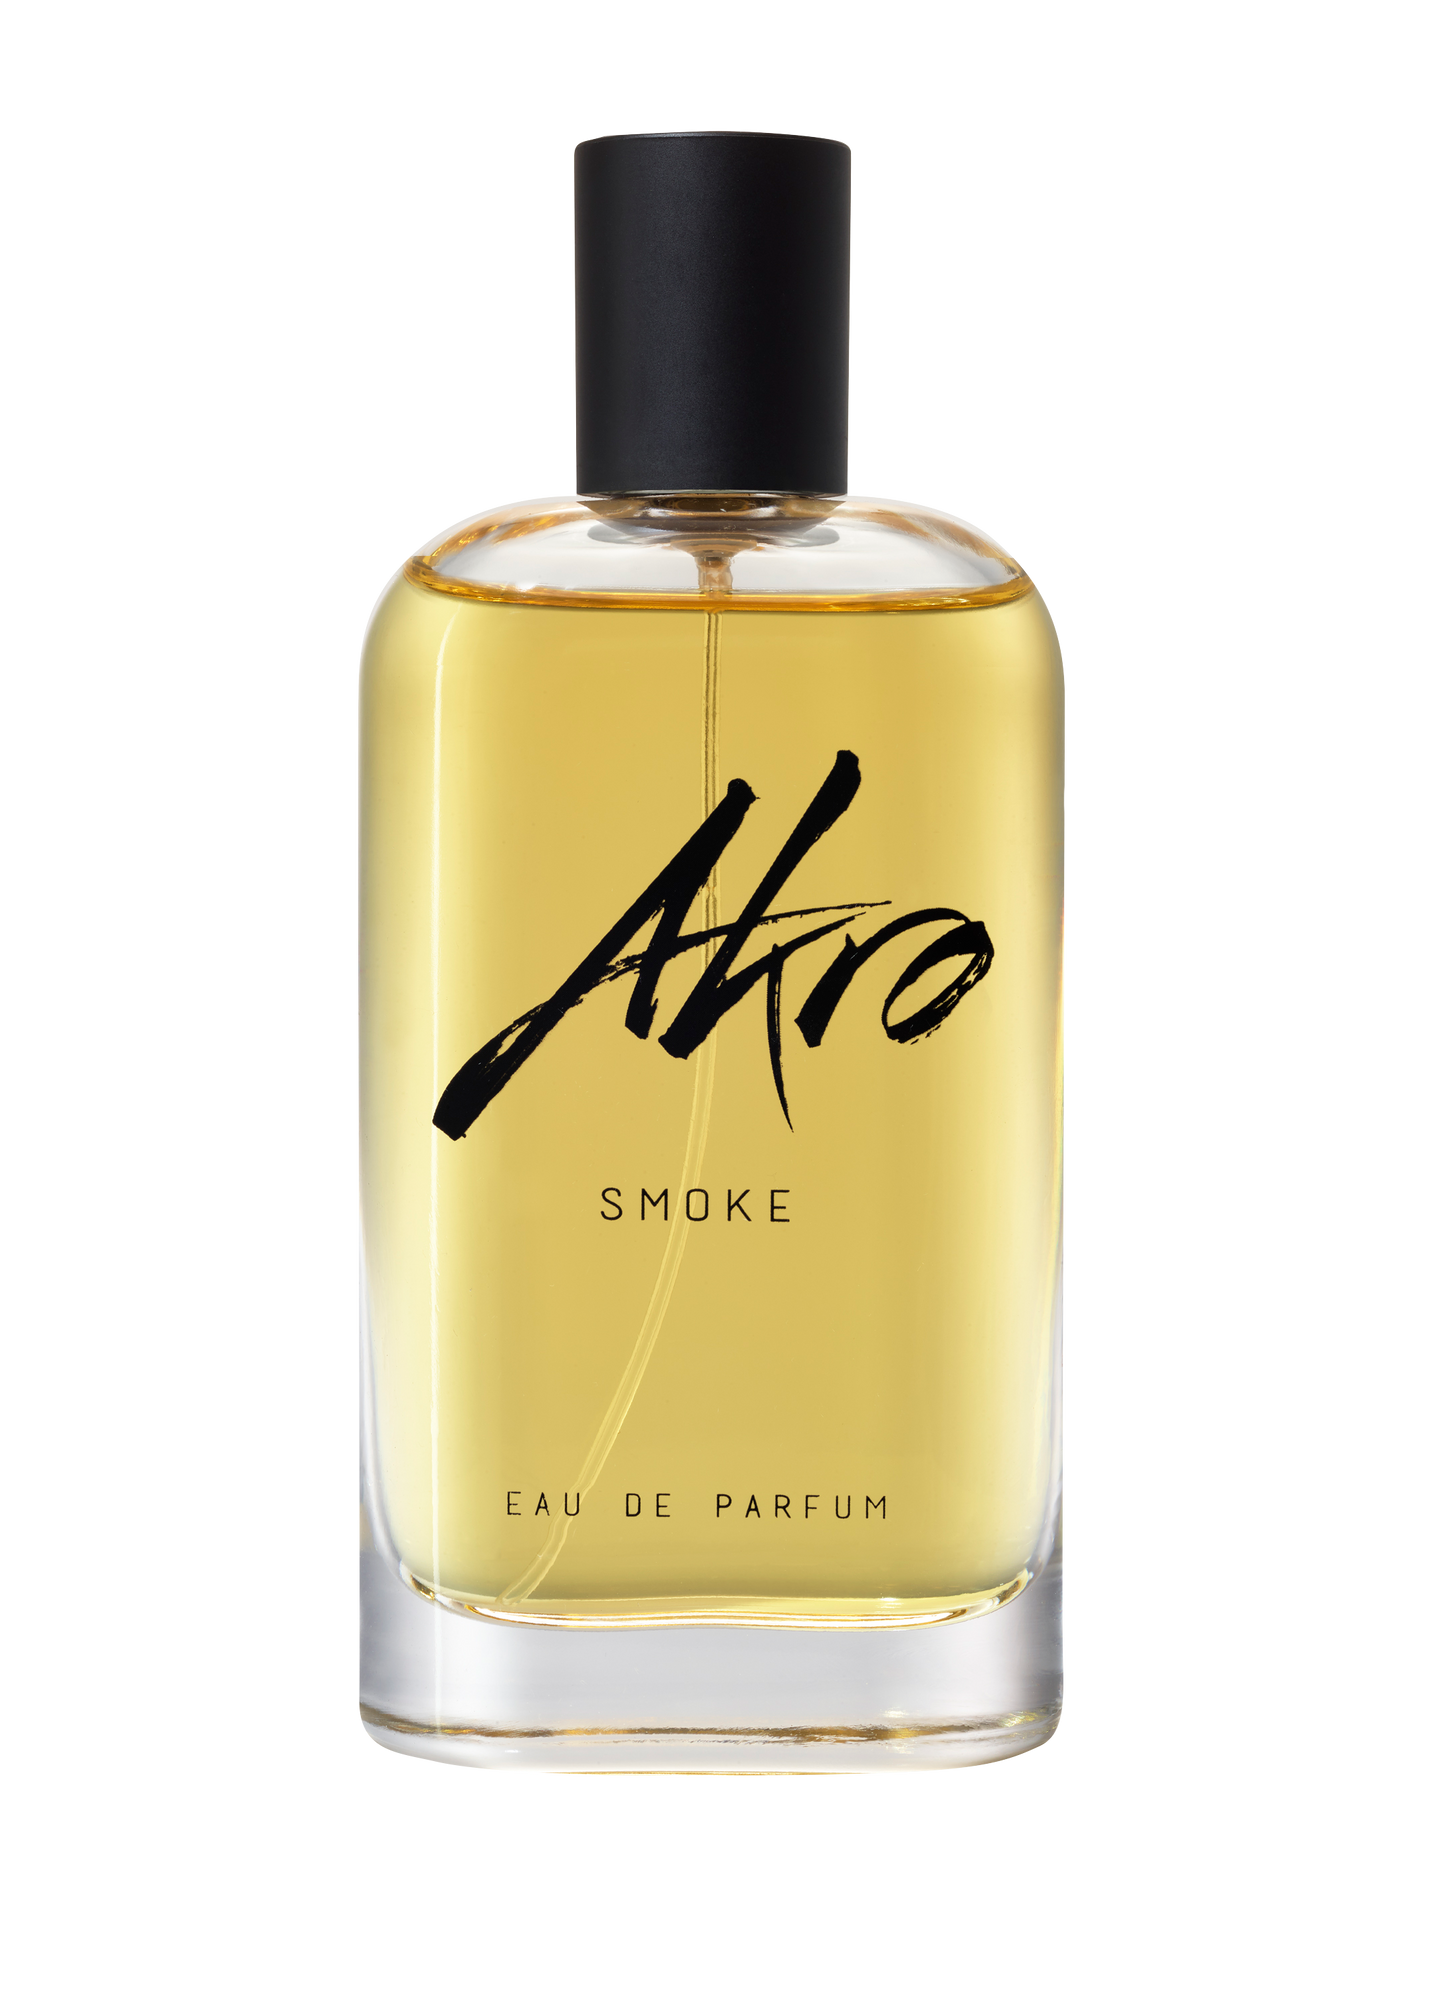 Smoke EDP Akro Fragrances